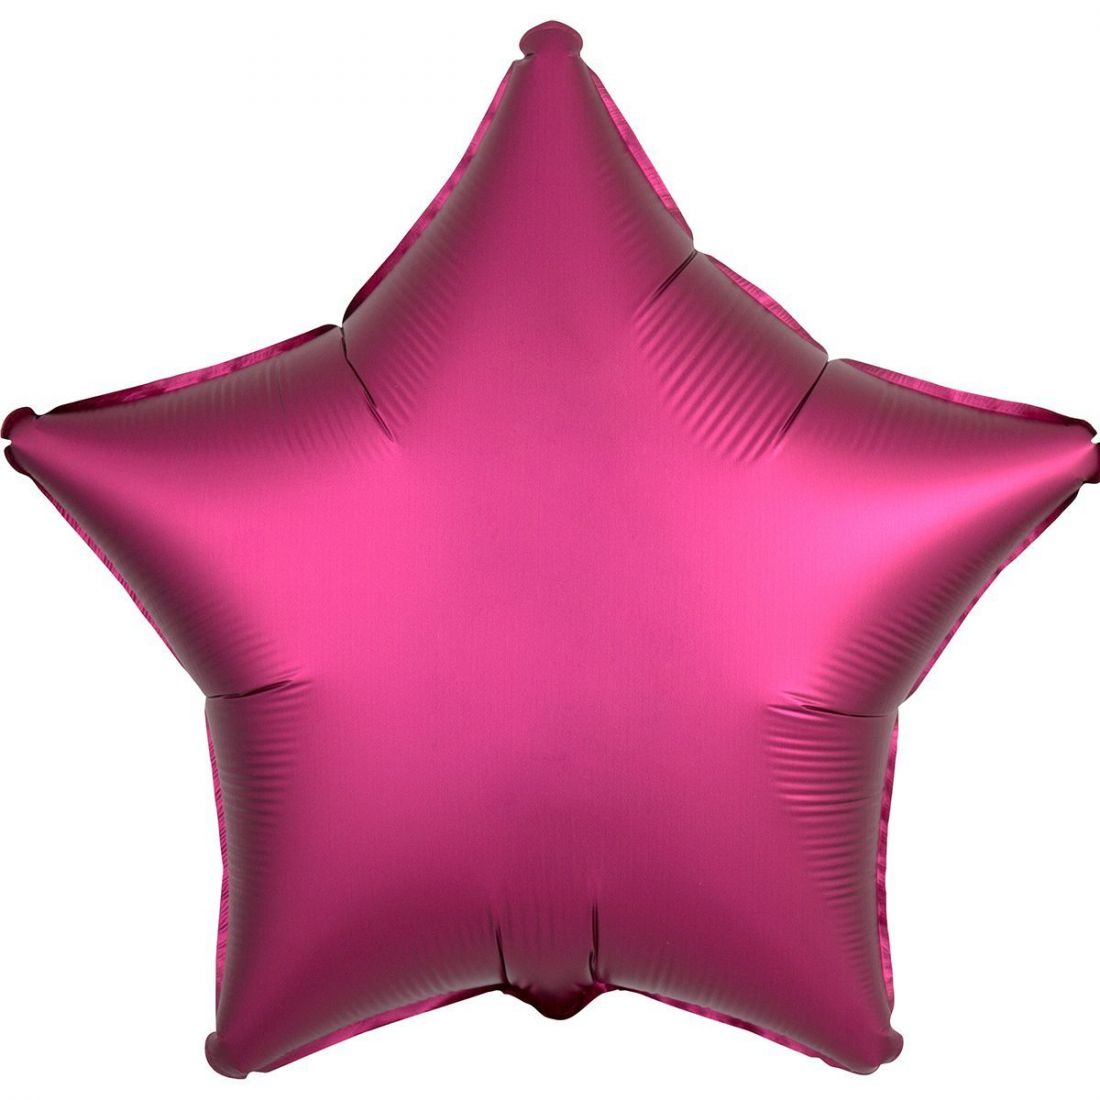 Звезда Гранат (Сатин) шар фольгированный с гелием